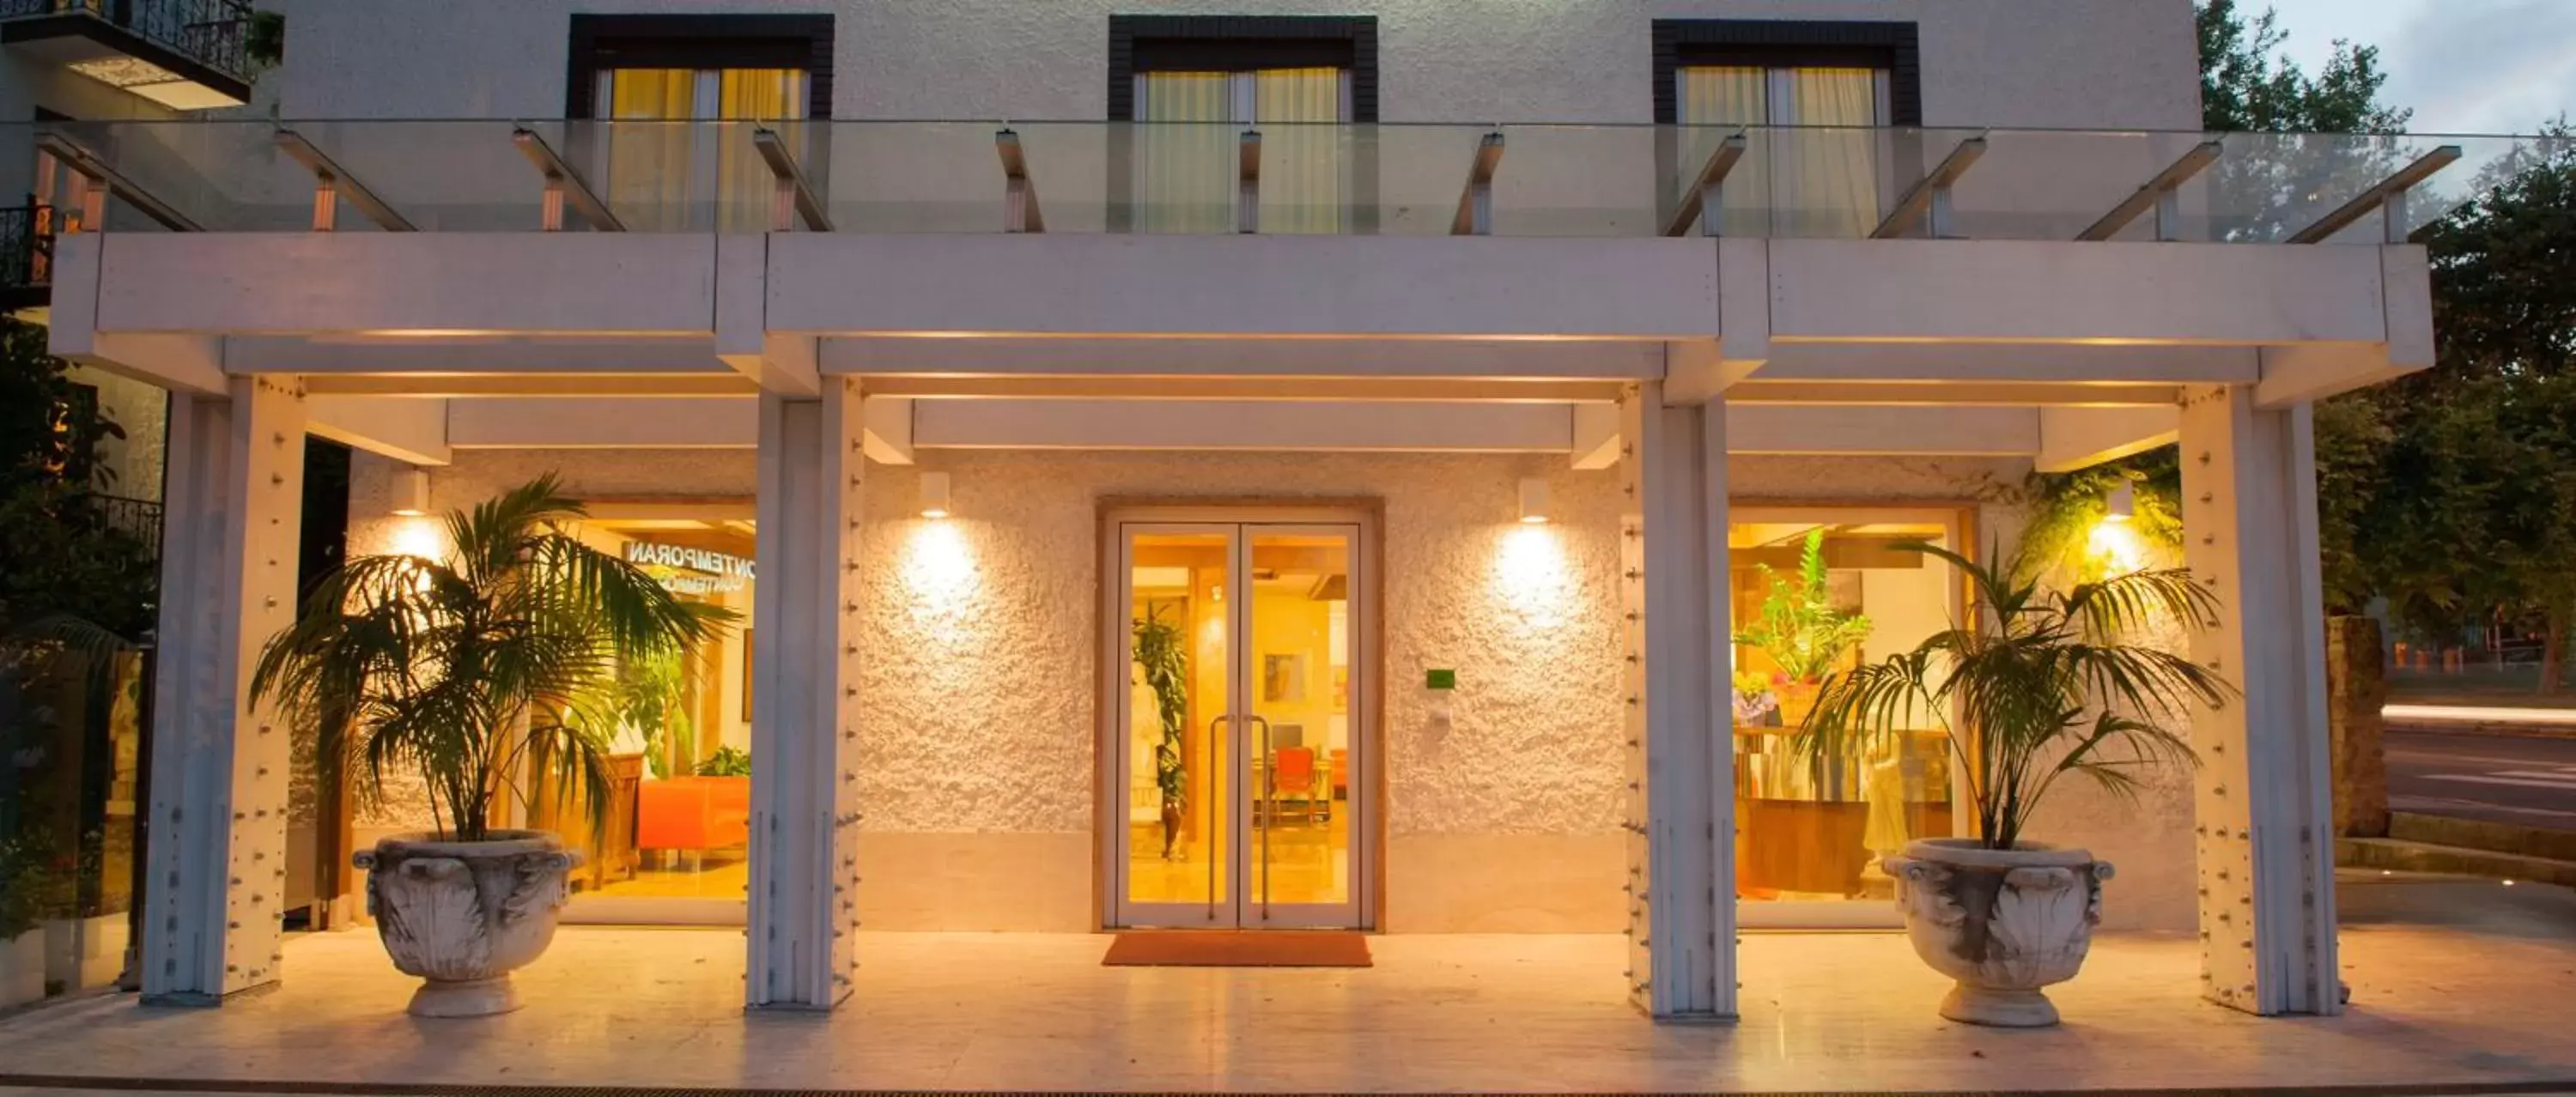 Facade/entrance in Hotel La Pergola